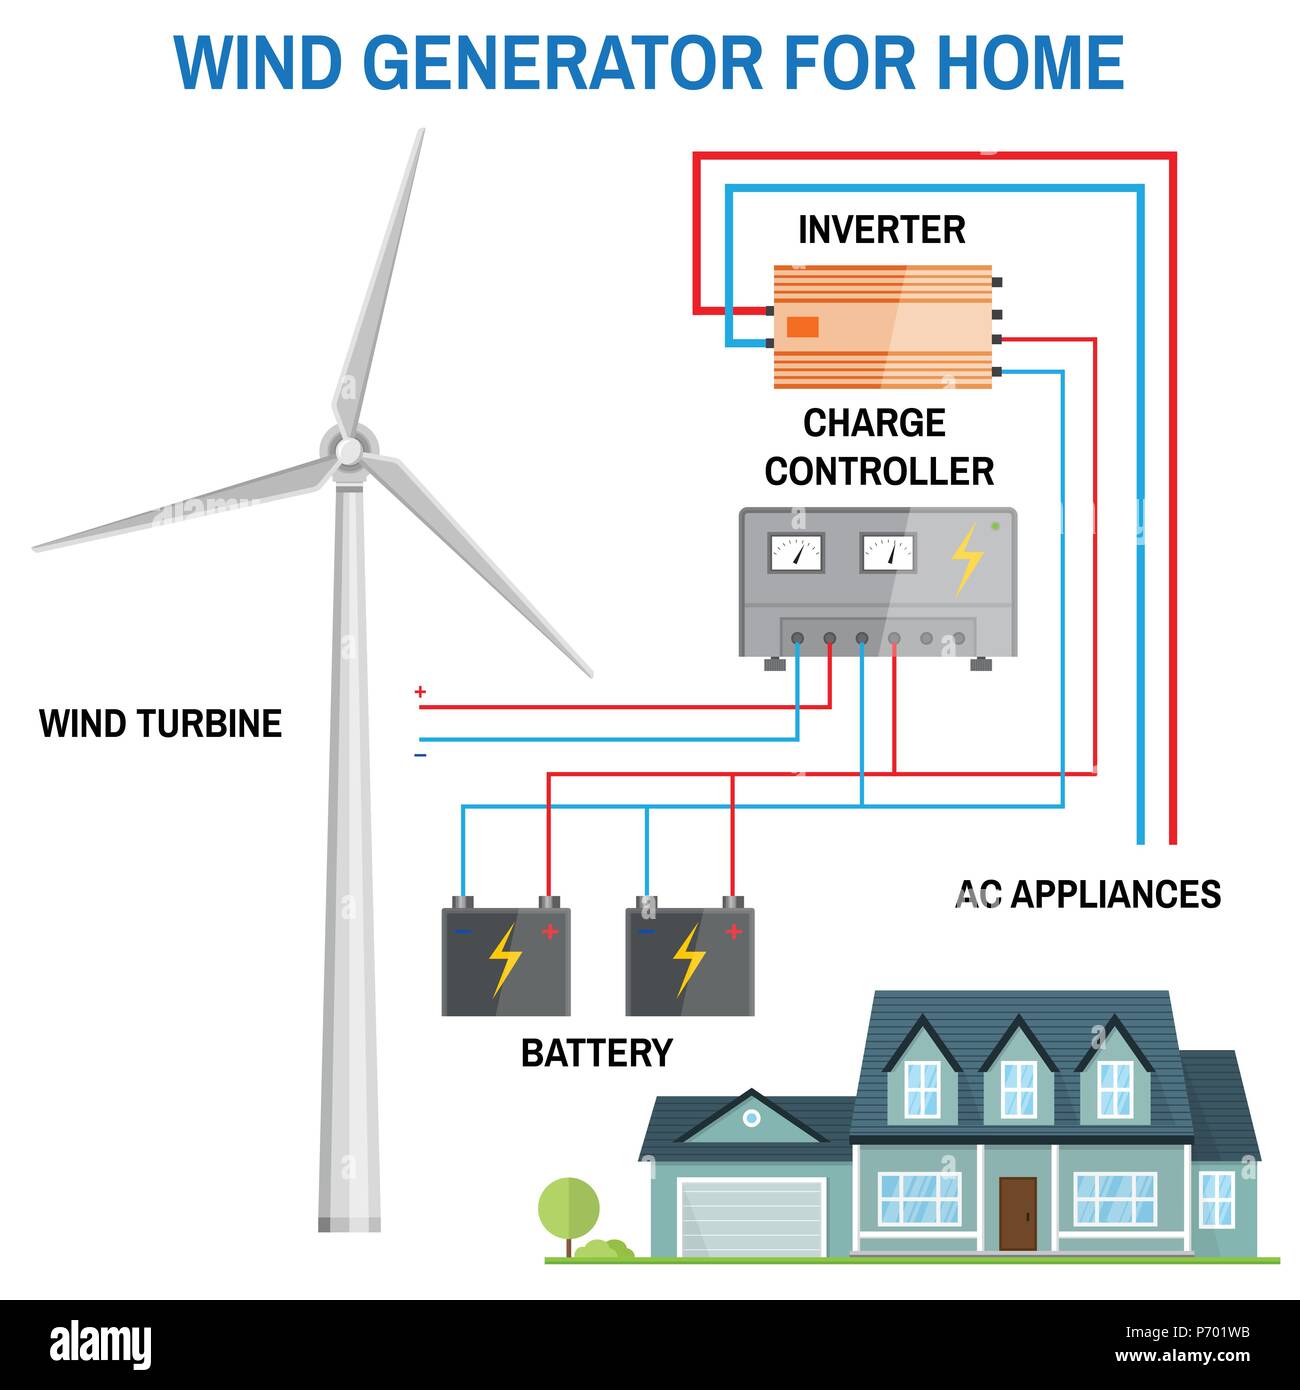 Wind Generator für zu Hause. Erneuerbare Energie Konzept. Vereinfachte Darstellung eines off-grid-System. Windturbine, Batterie, Laderegler und Wechselrichter. Ve Stock Vektor